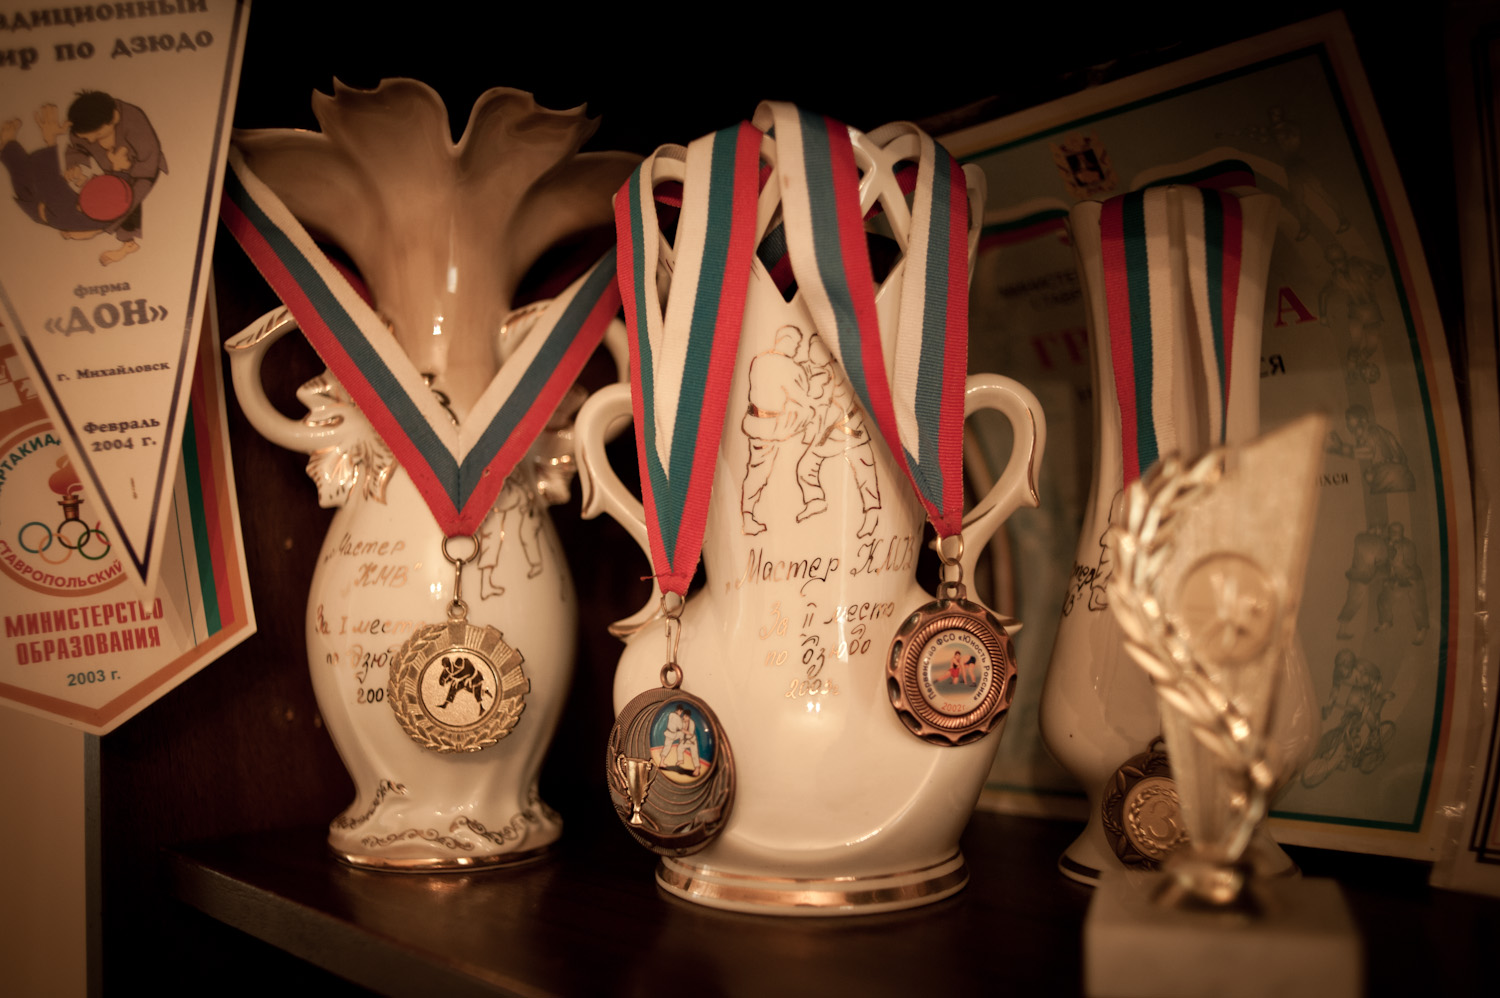  Tigran's judo medals.  